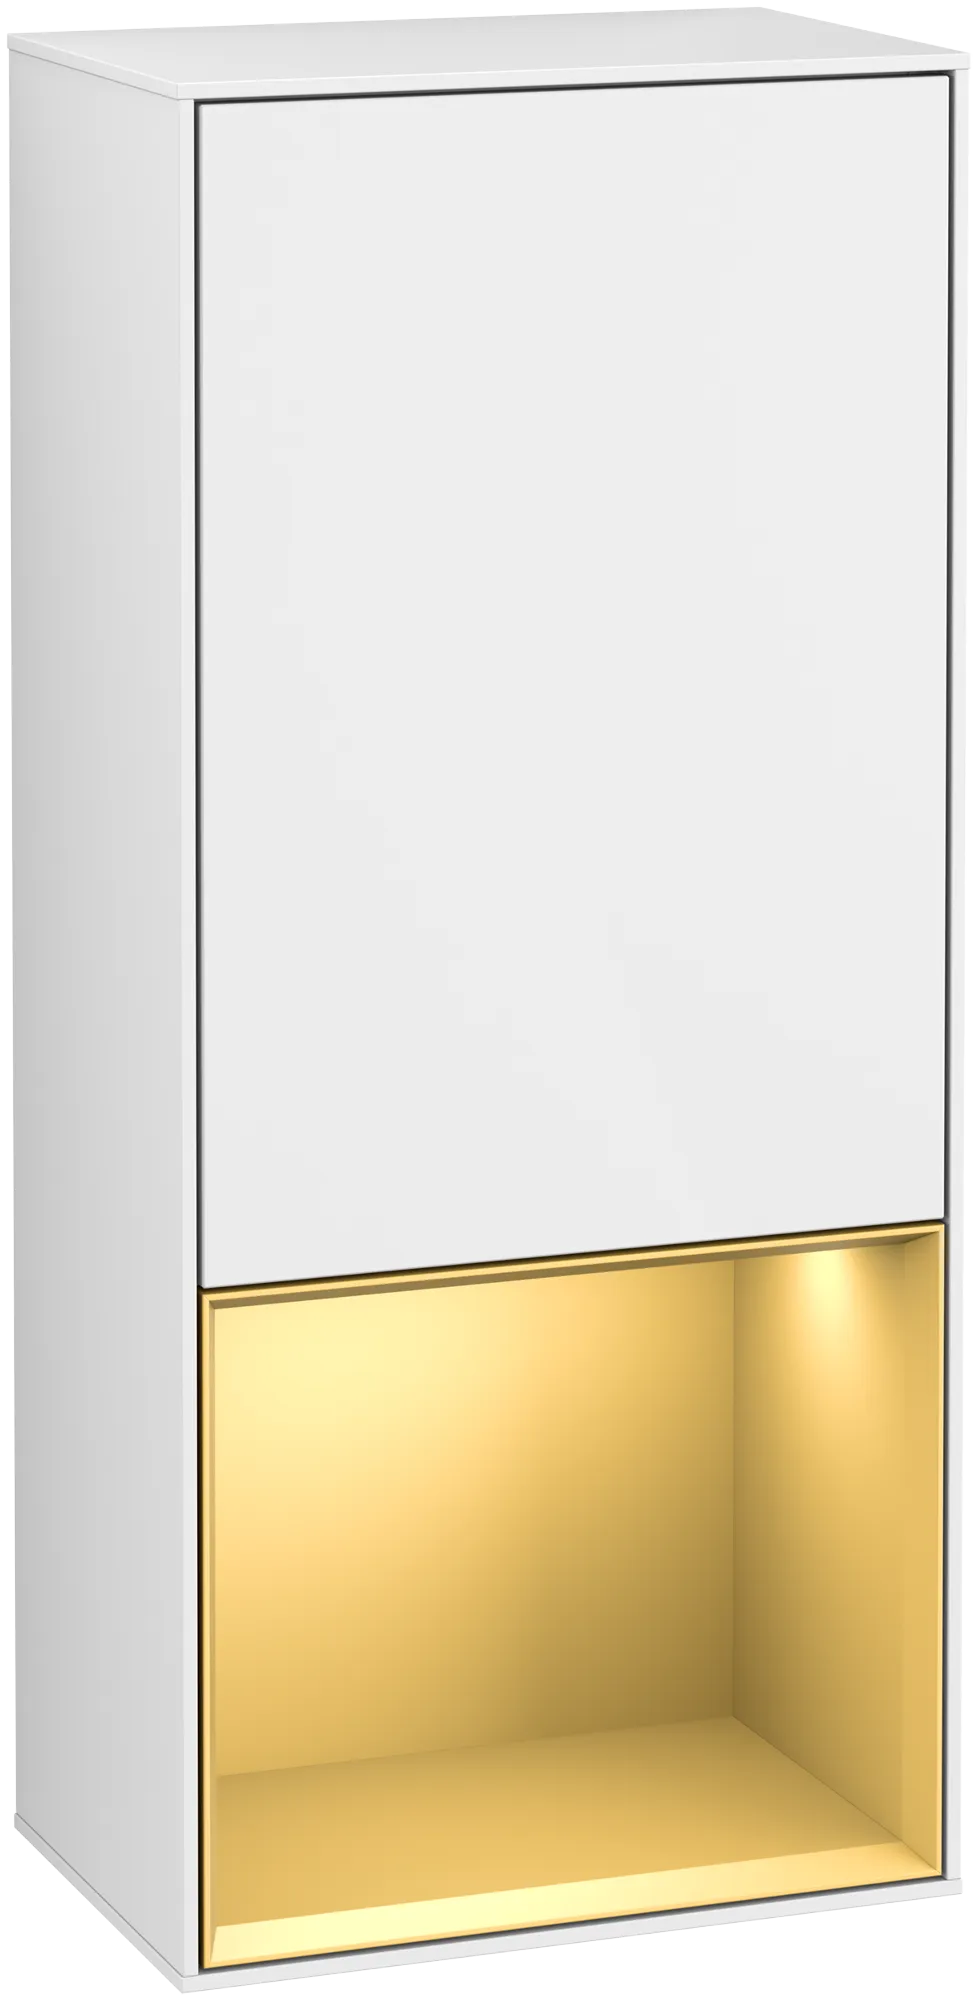 Bild von VILLEROY BOCH Finion Seitenschrank, mit Beleuchtung, 1 Tür, 418 x 936 x 270 mm, Glossy White Lacquer / Gold Matt Lacquer #G540HFGF